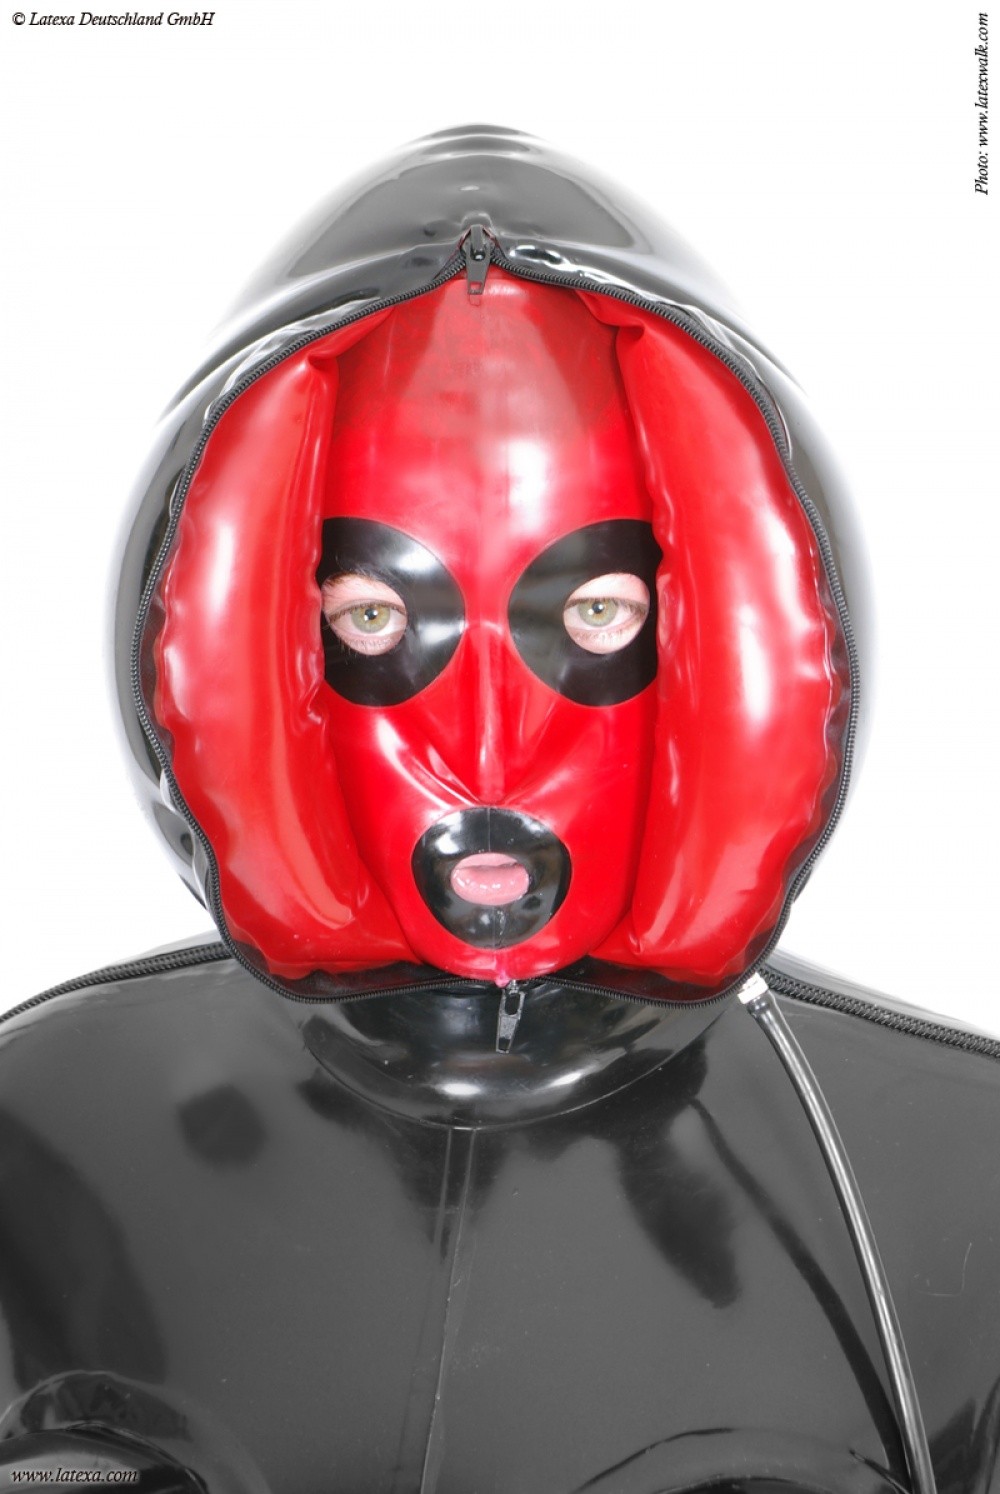 Latexa 3172 Masque latex zipp gonflable noir et rouge